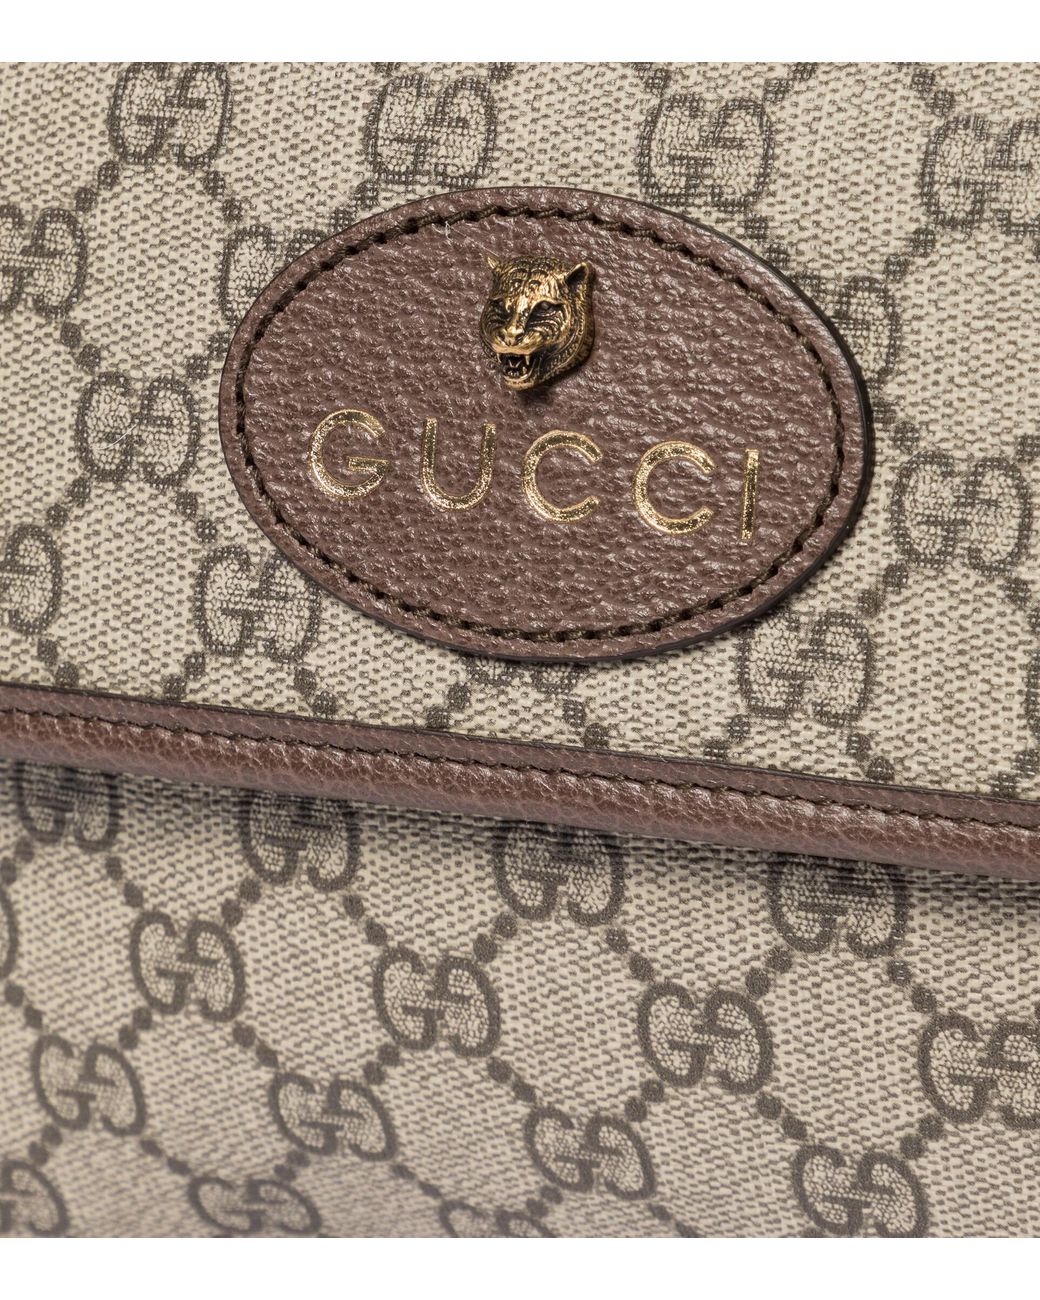 Brown Gucci GG Supreme Belt Bag – Designer Revival